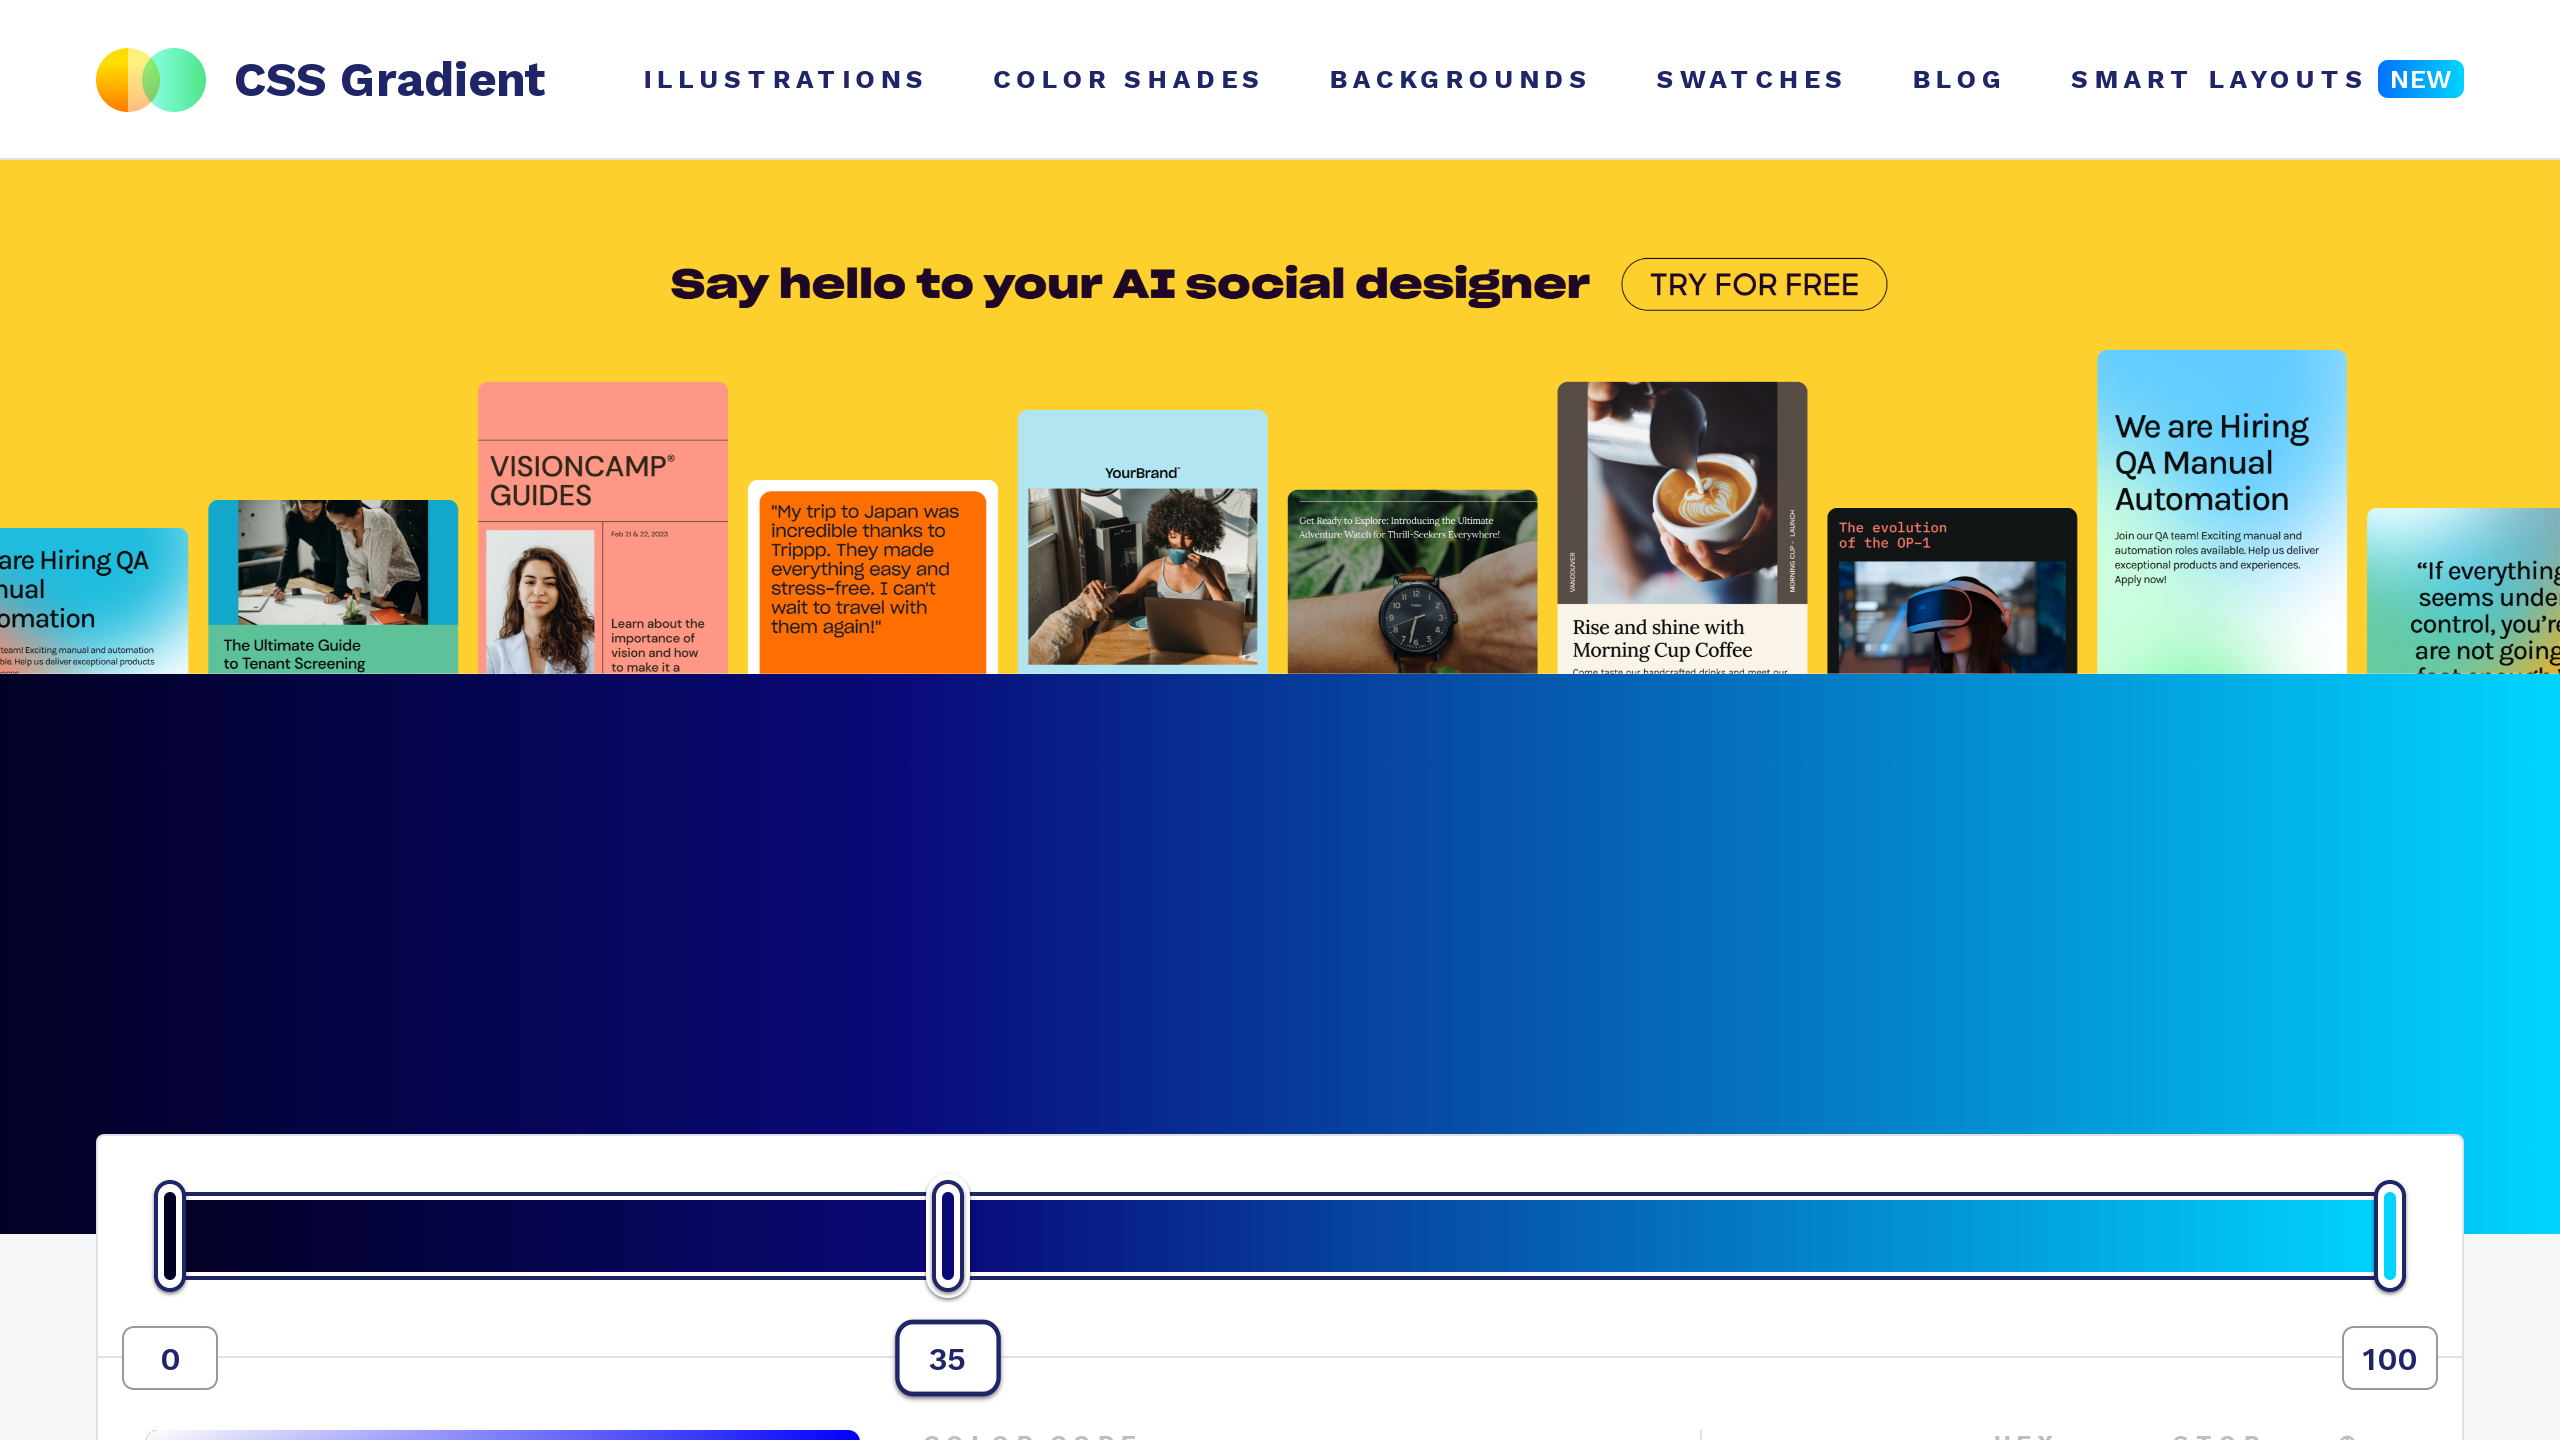 CSS Gradient's website screenshot